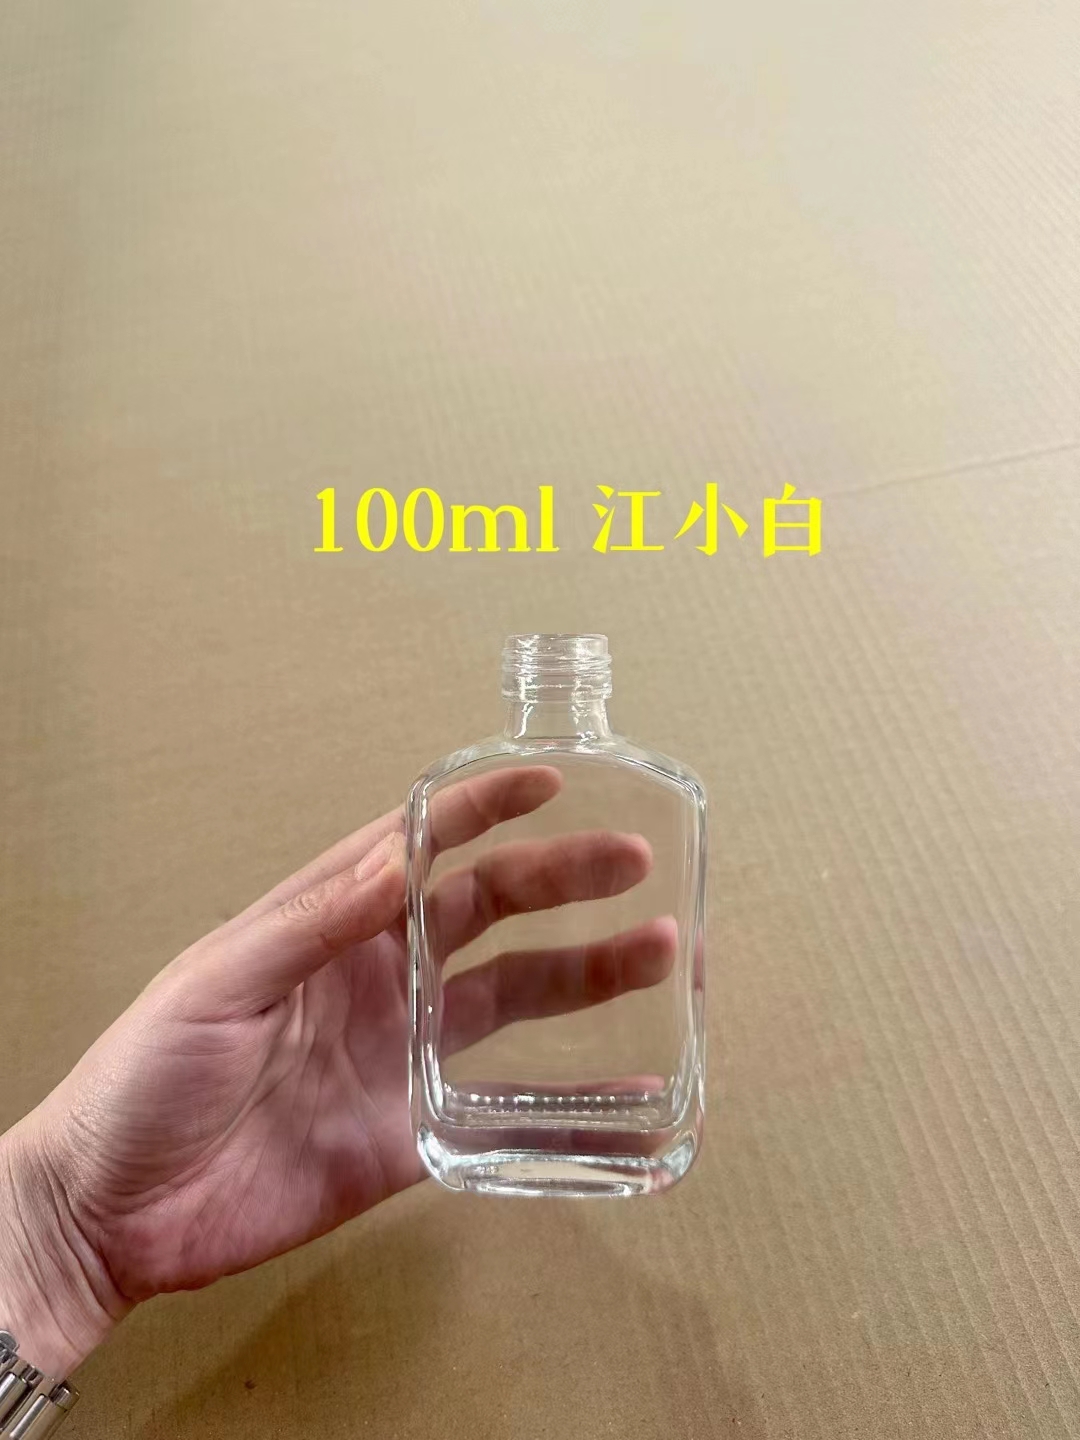 现货100ml伏特加玻璃瓶厂家-定制小圆瓶供应商-销售玻璃方瓶价格询价-一呼百应